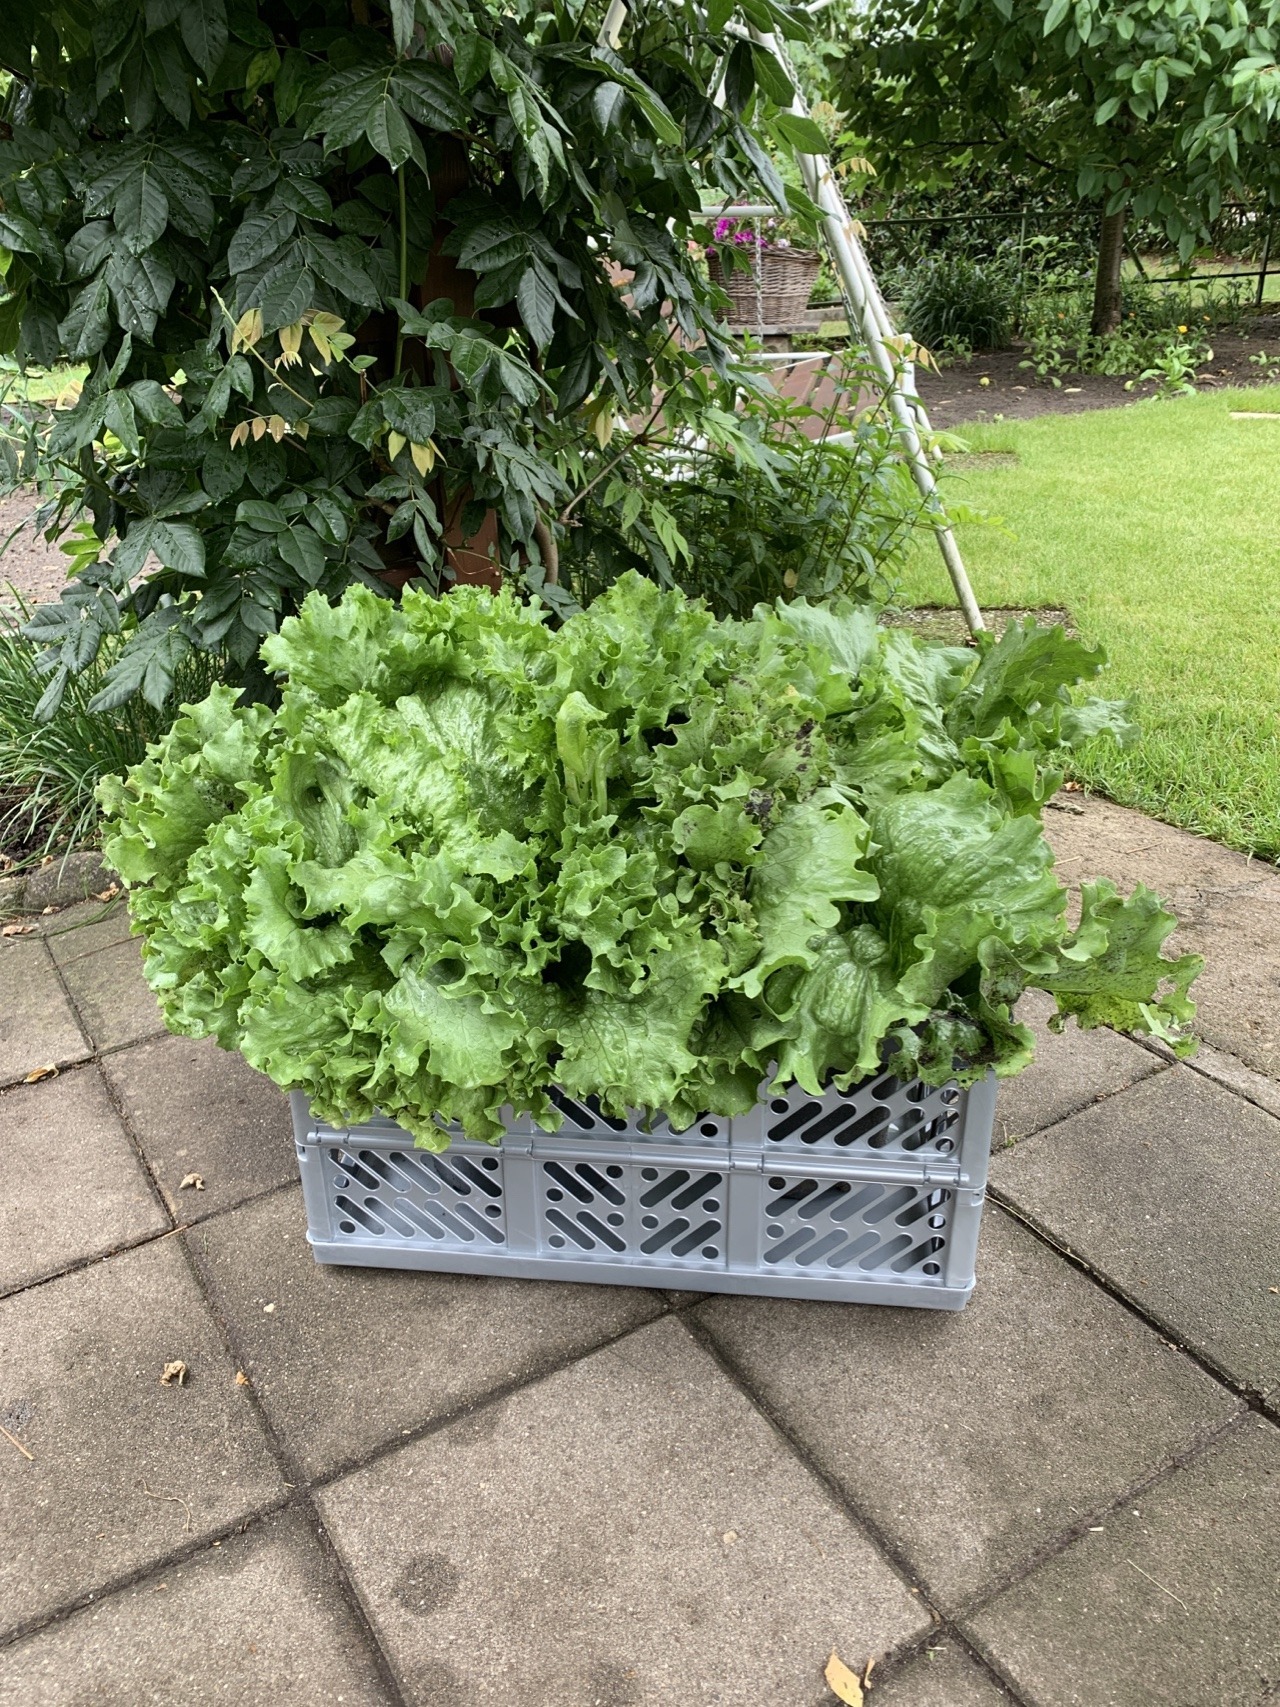 Riesige Salatpflanzen wurden innerhalb der Familie verteilt